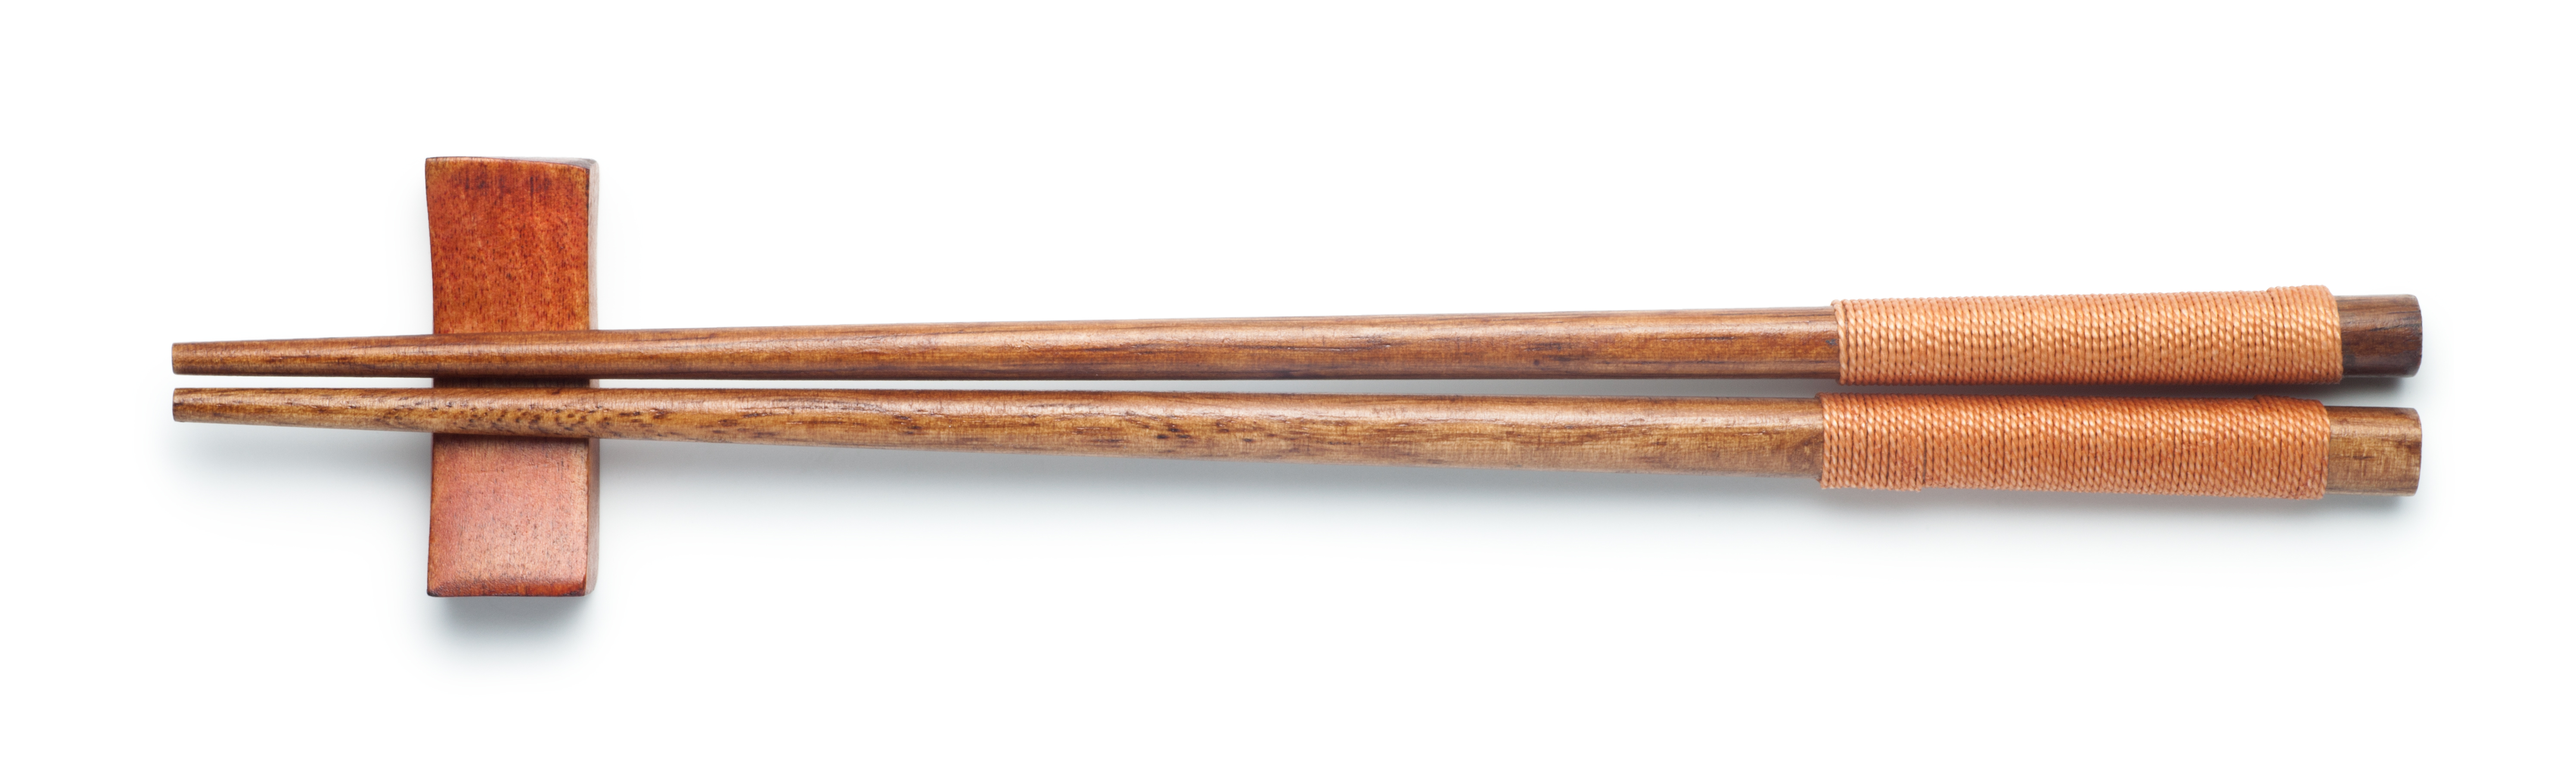 A pair of wooden chopsticks | Source: Shutterstock